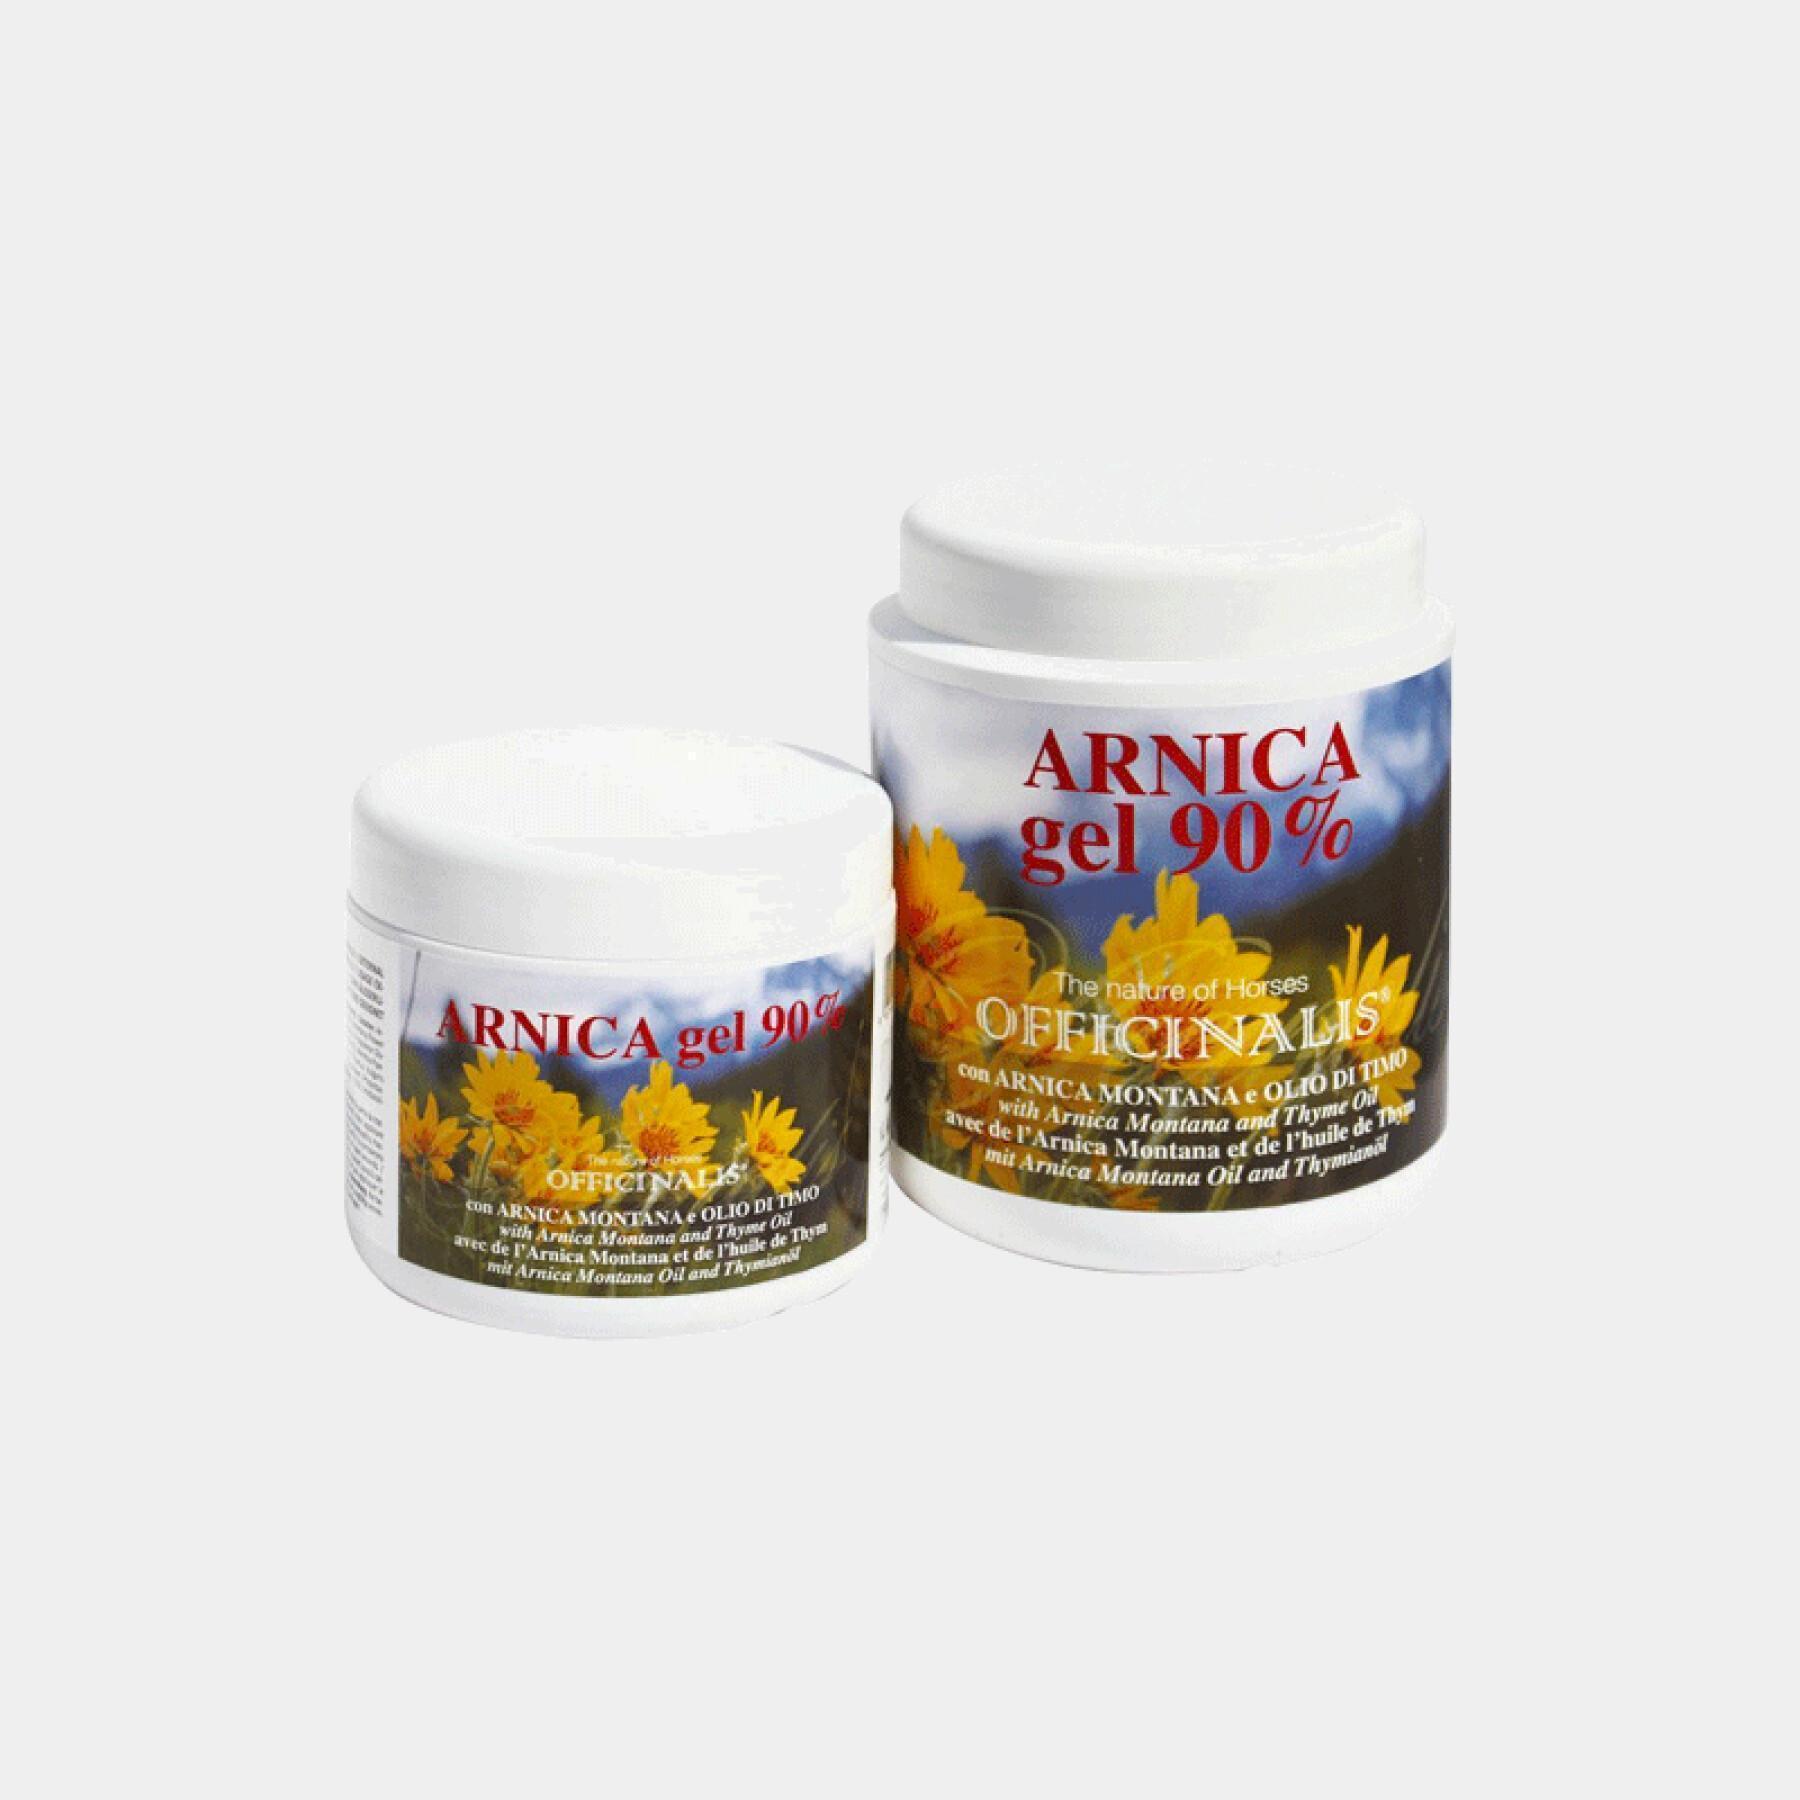 Massage gel for horses Officinalis Arnica 90 %